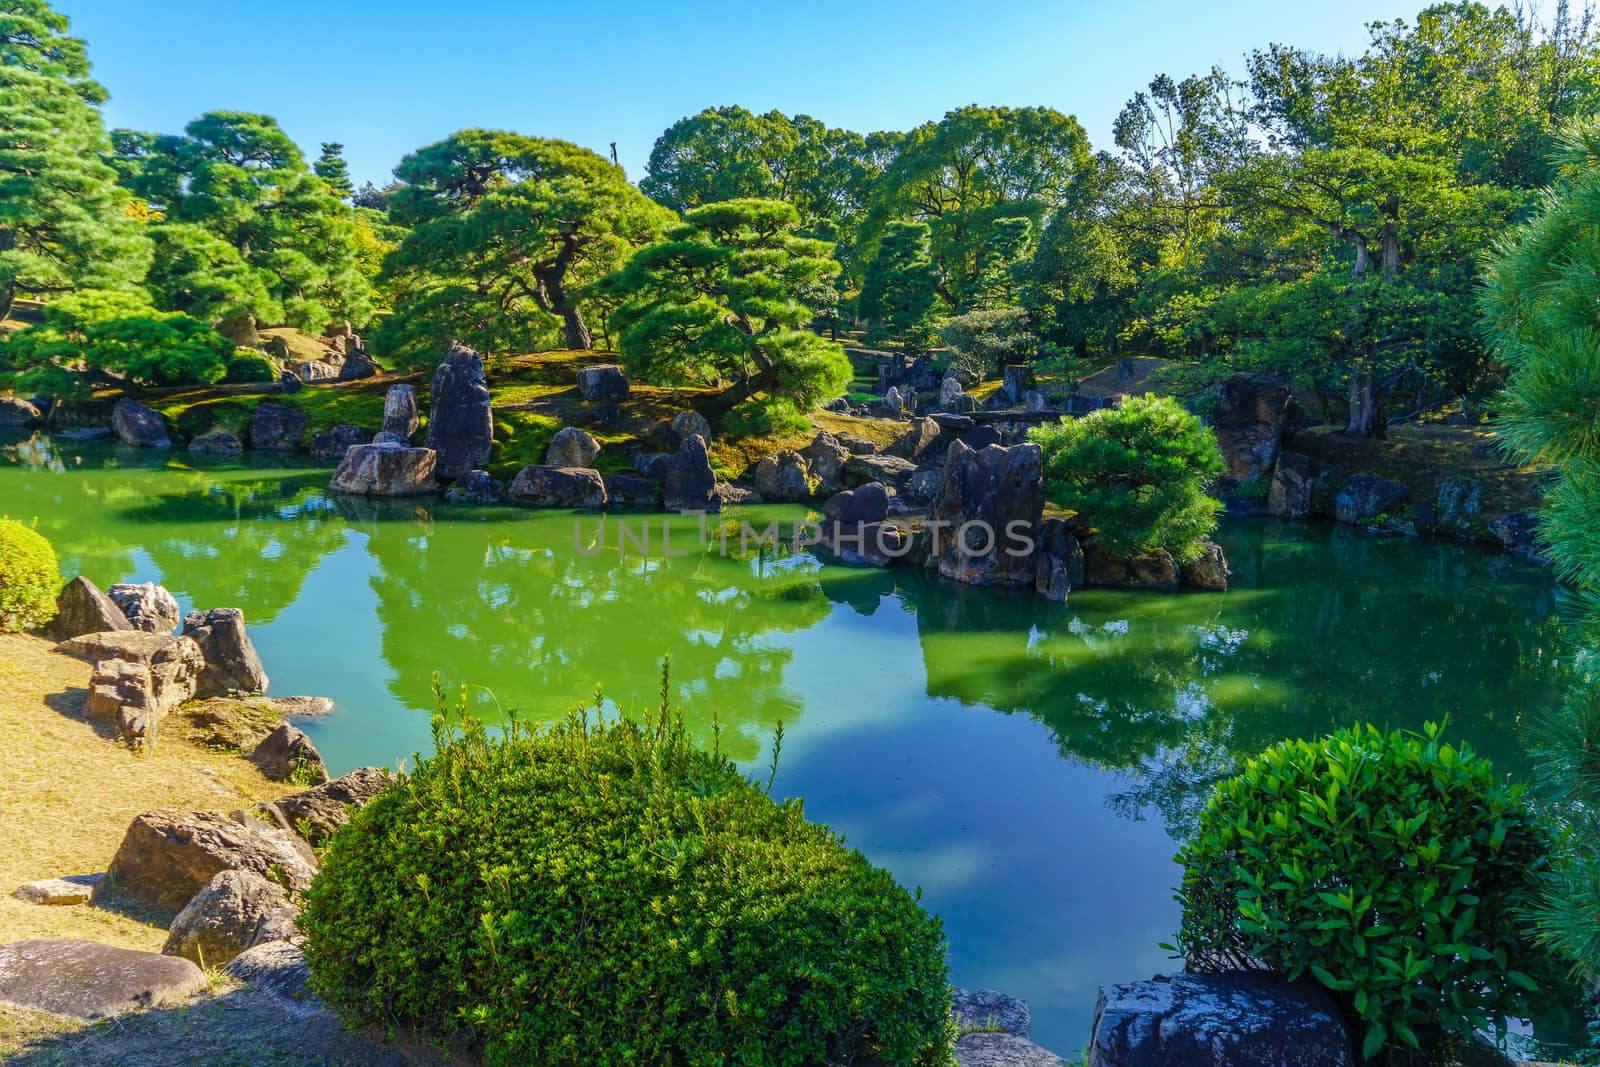 Garden in the Nijo Castle, Kyoto by RnDmS